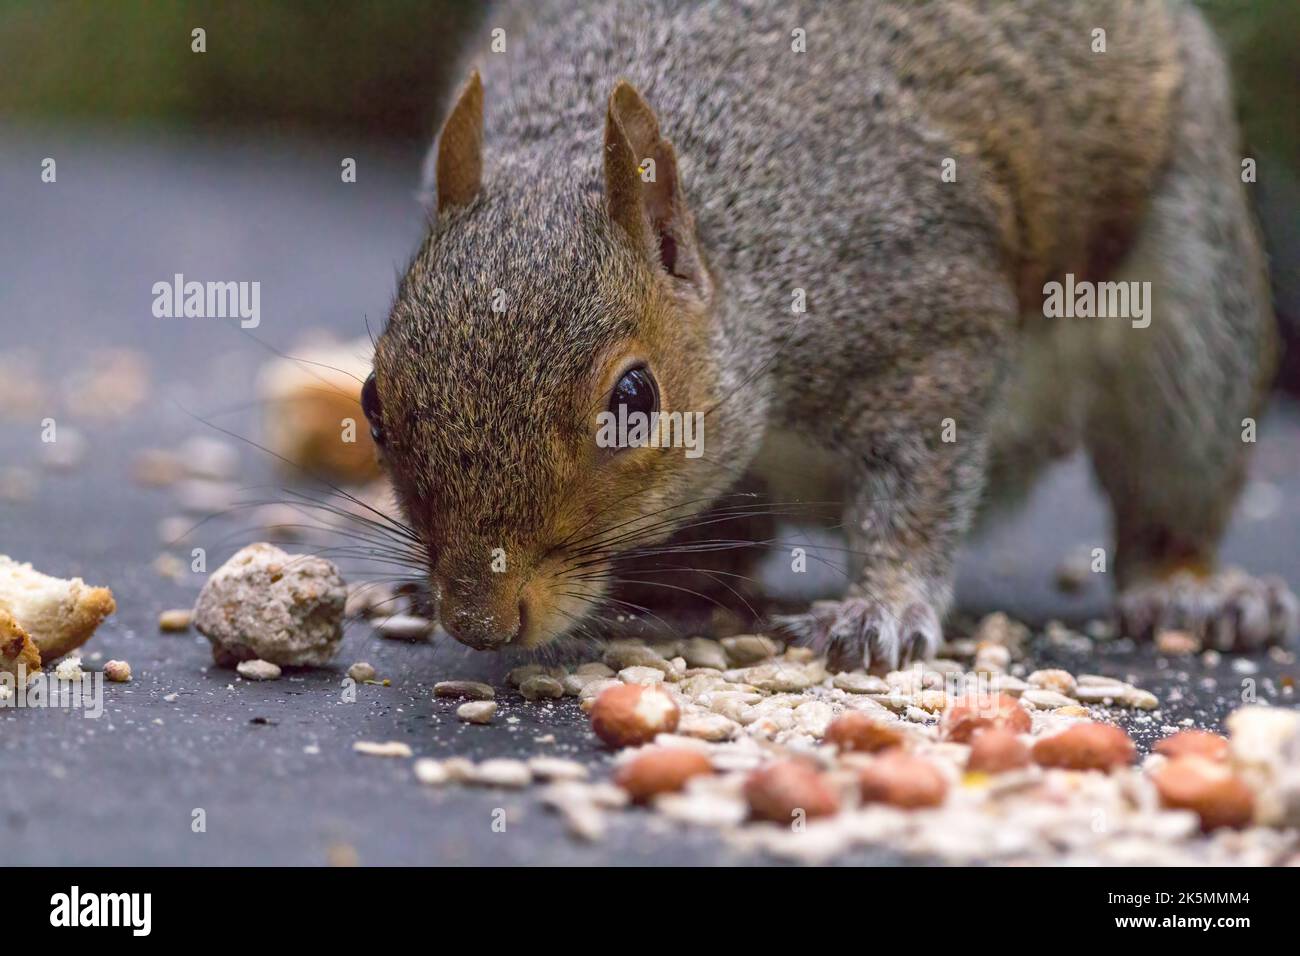 Das Eichhörnchen grau (sciurus carolinesis), das beim kleinen Fell auf den gemischten Samen die Nüsse und das Brot füttert, das für die Vögel ausgestreckt ist. Graues und rötliches Fell mit großem buschigen Schwanz Stockfoto